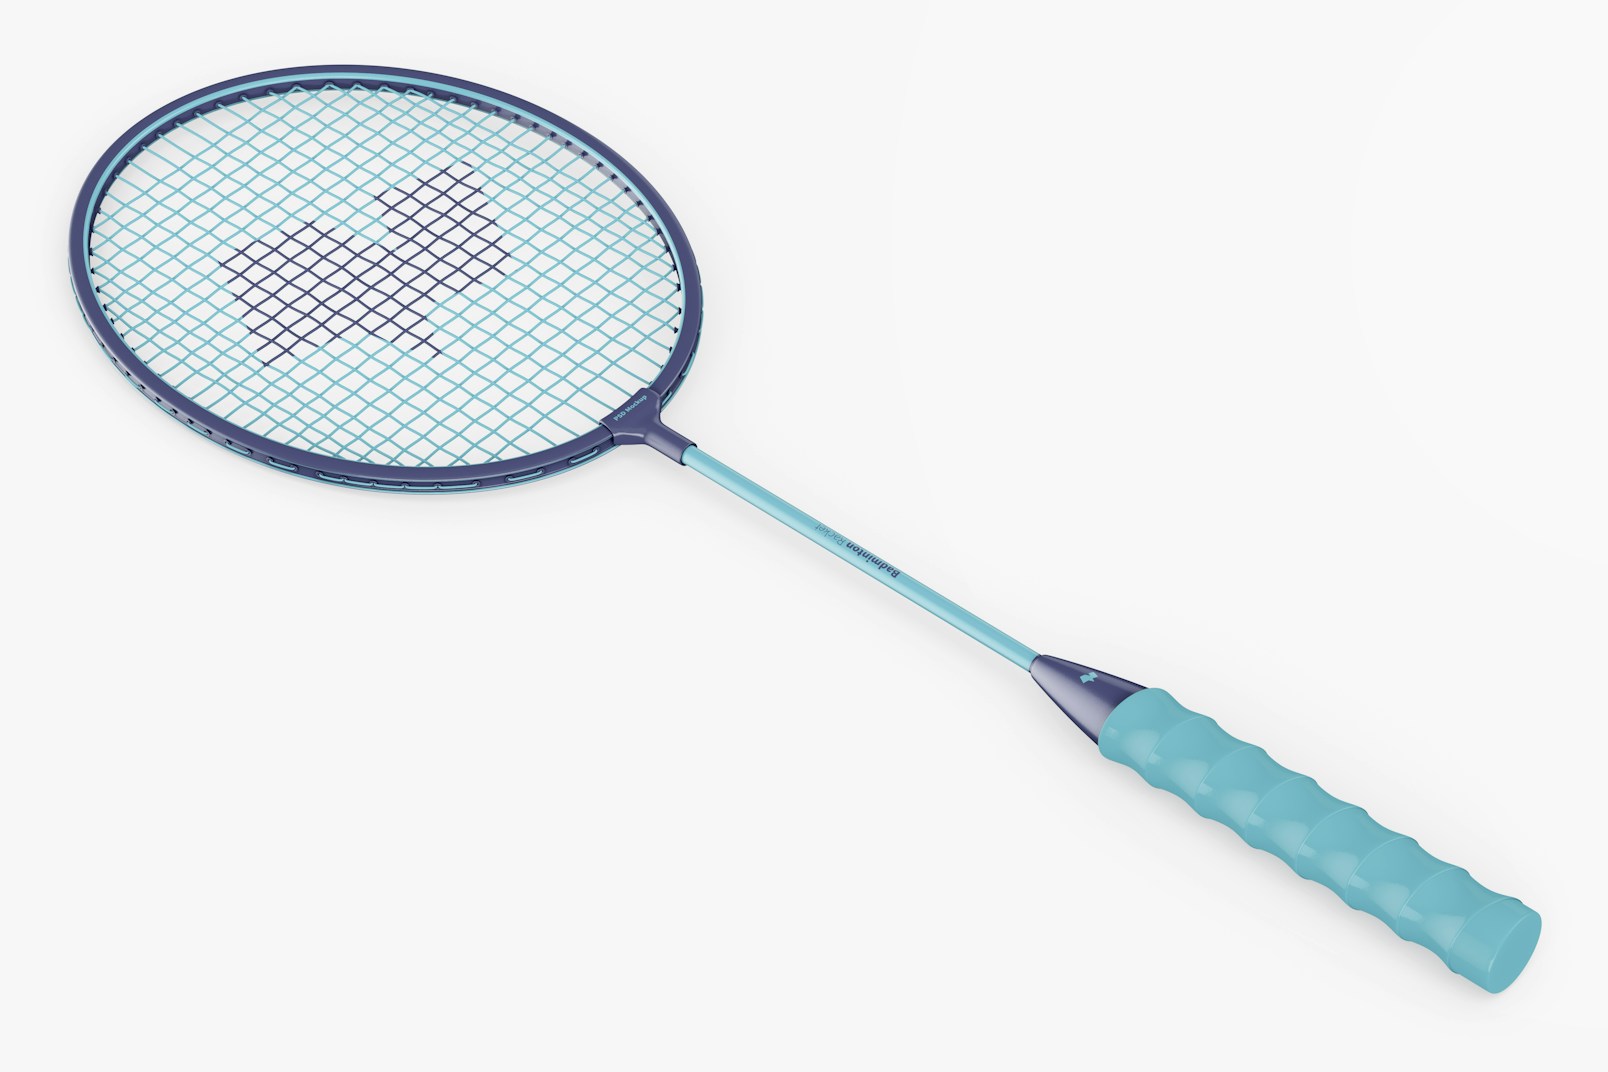 Badminton Racket Mockup